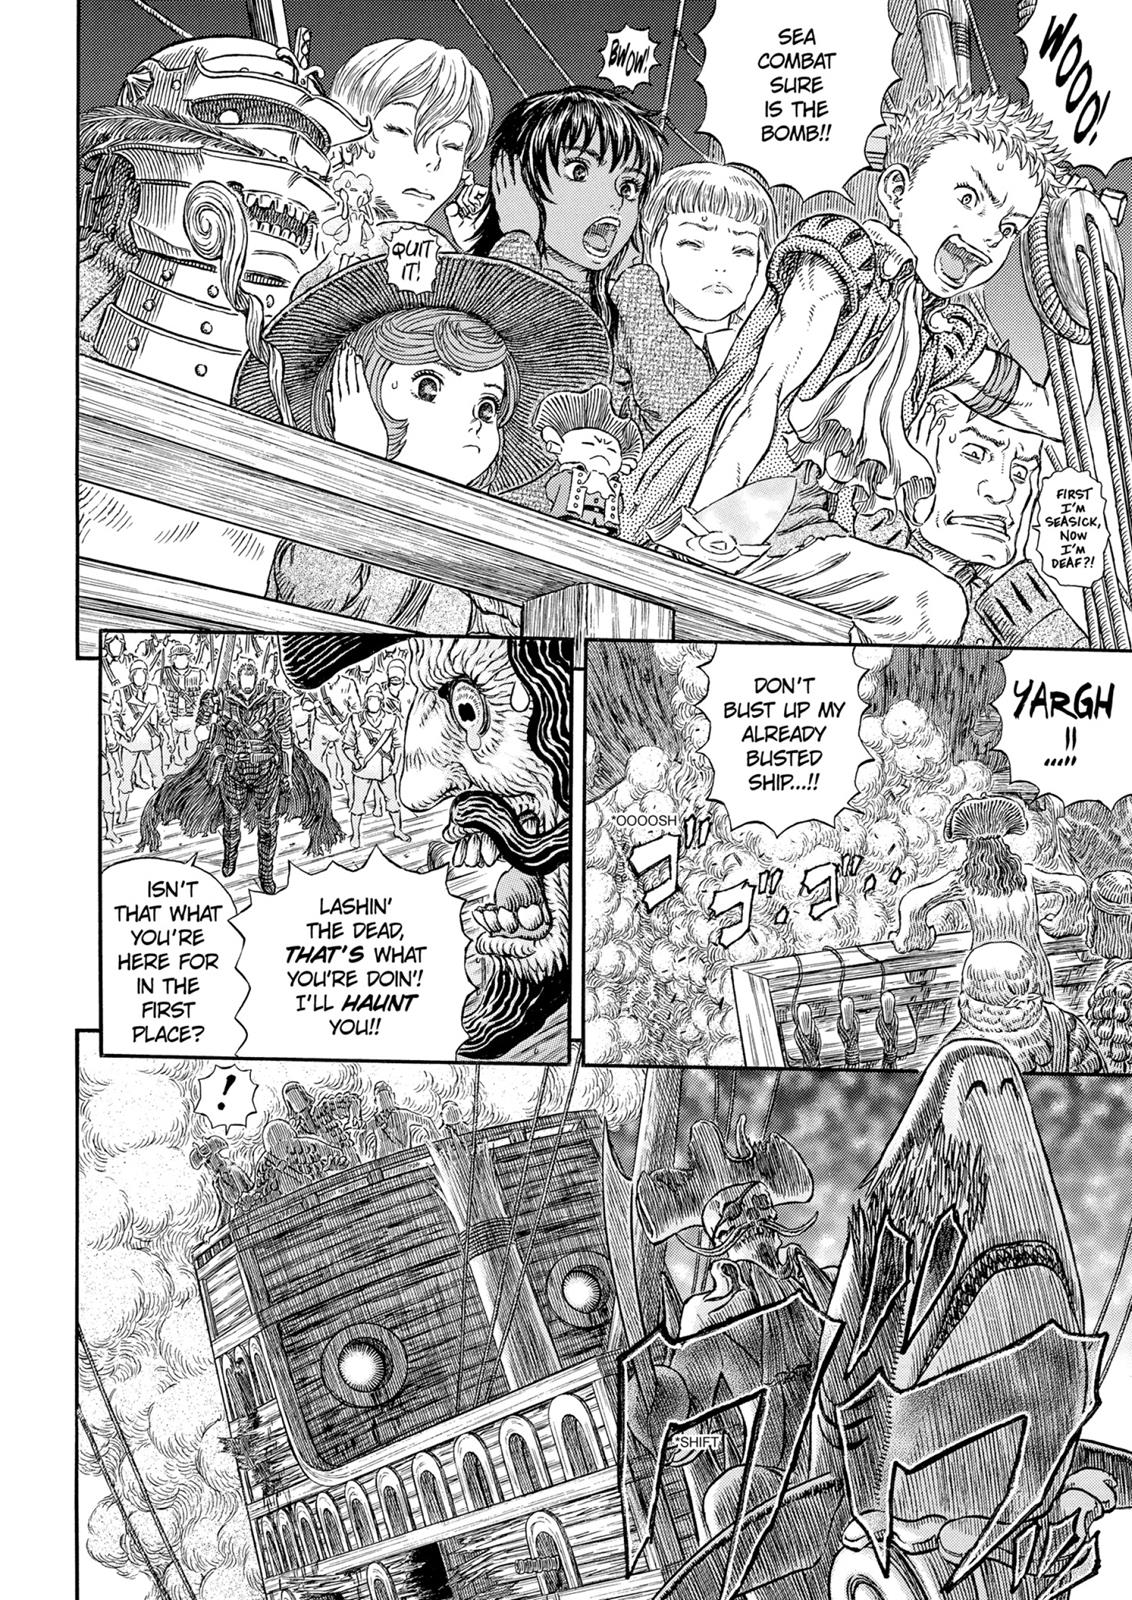 Berserk Manga Chapter 311 image 03